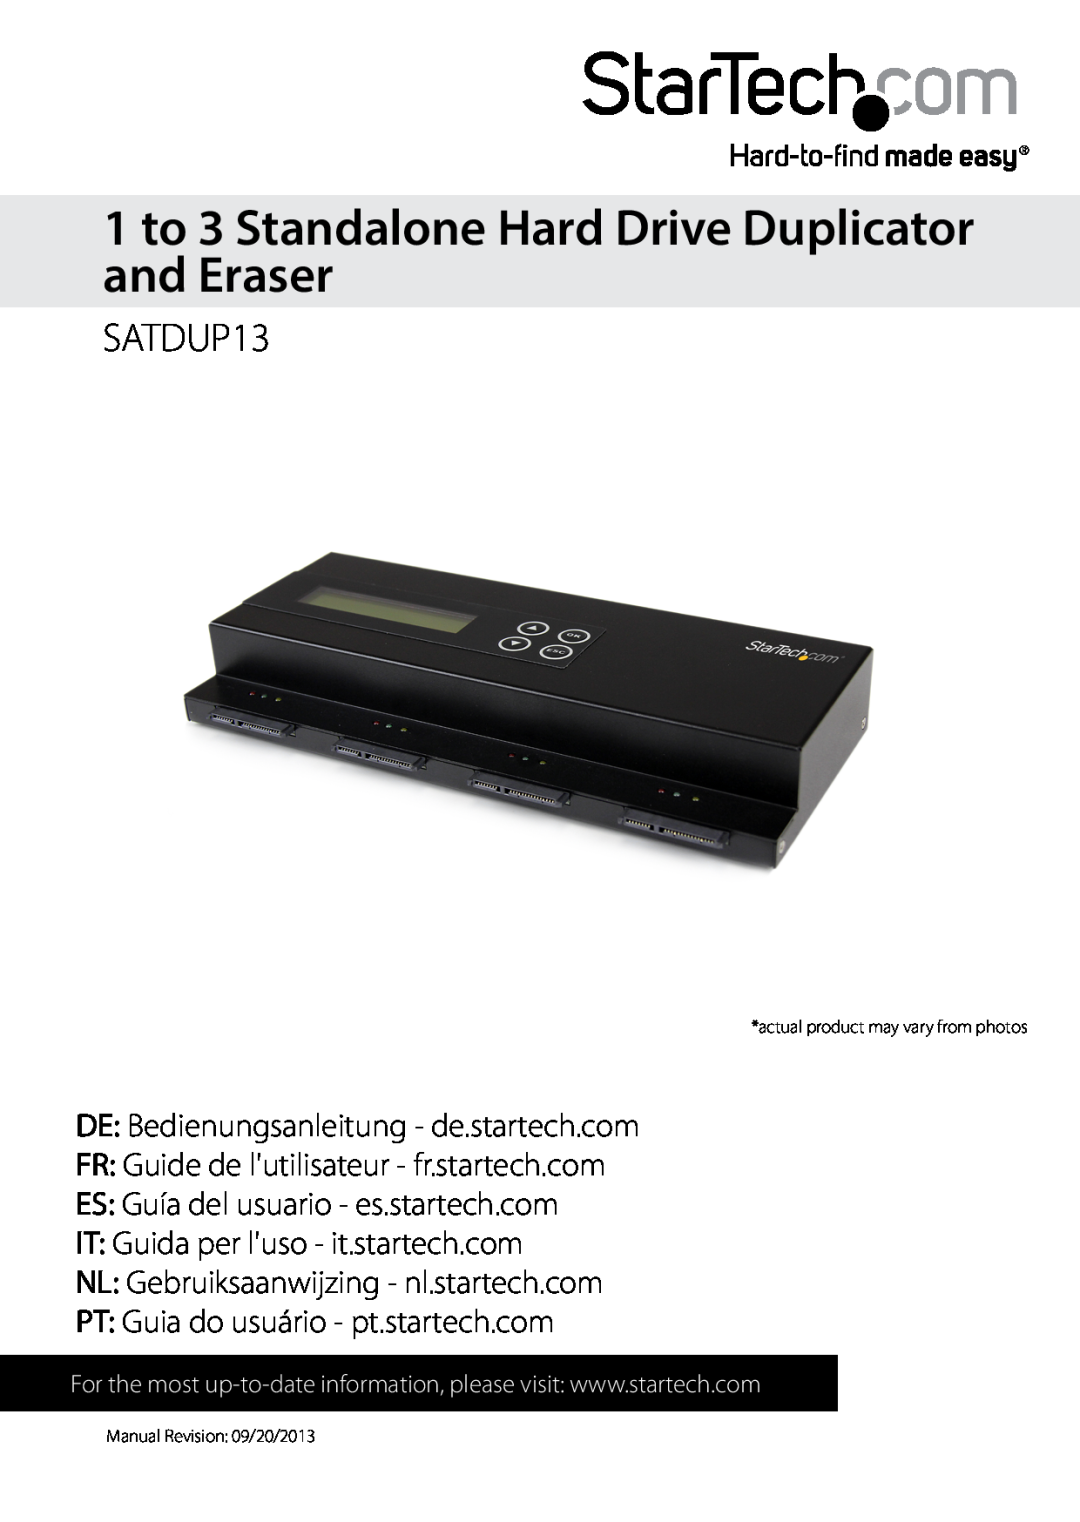 StarTech.com SATDUP13 manual 1 to 3 Standalone Hard Drive Duplicator and Eraser, DE Bedienungsanleitung - de.startech.com 